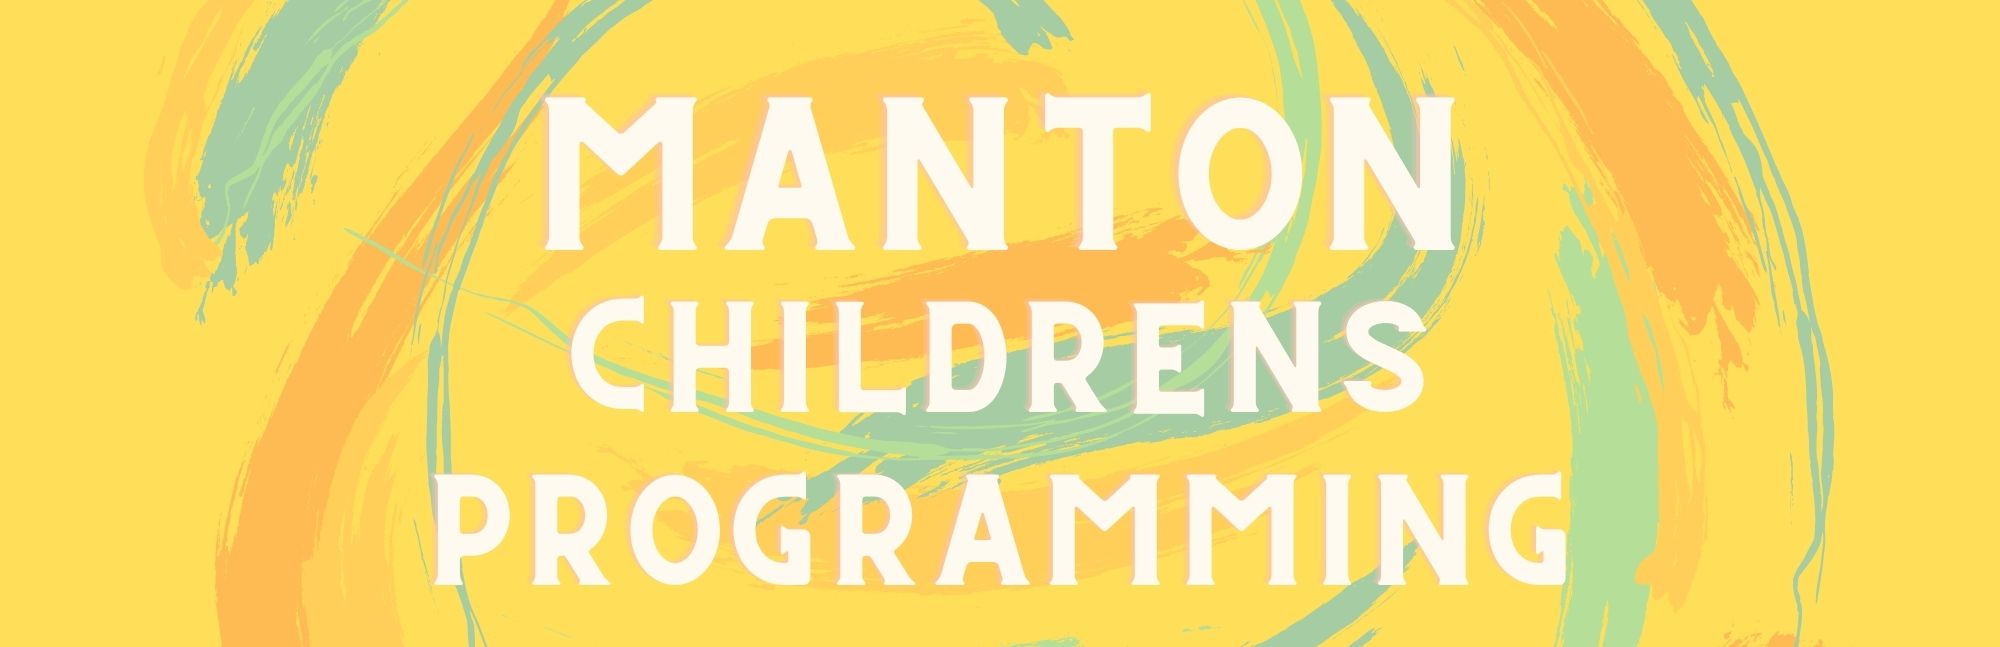 Manton Children Programs.jpg